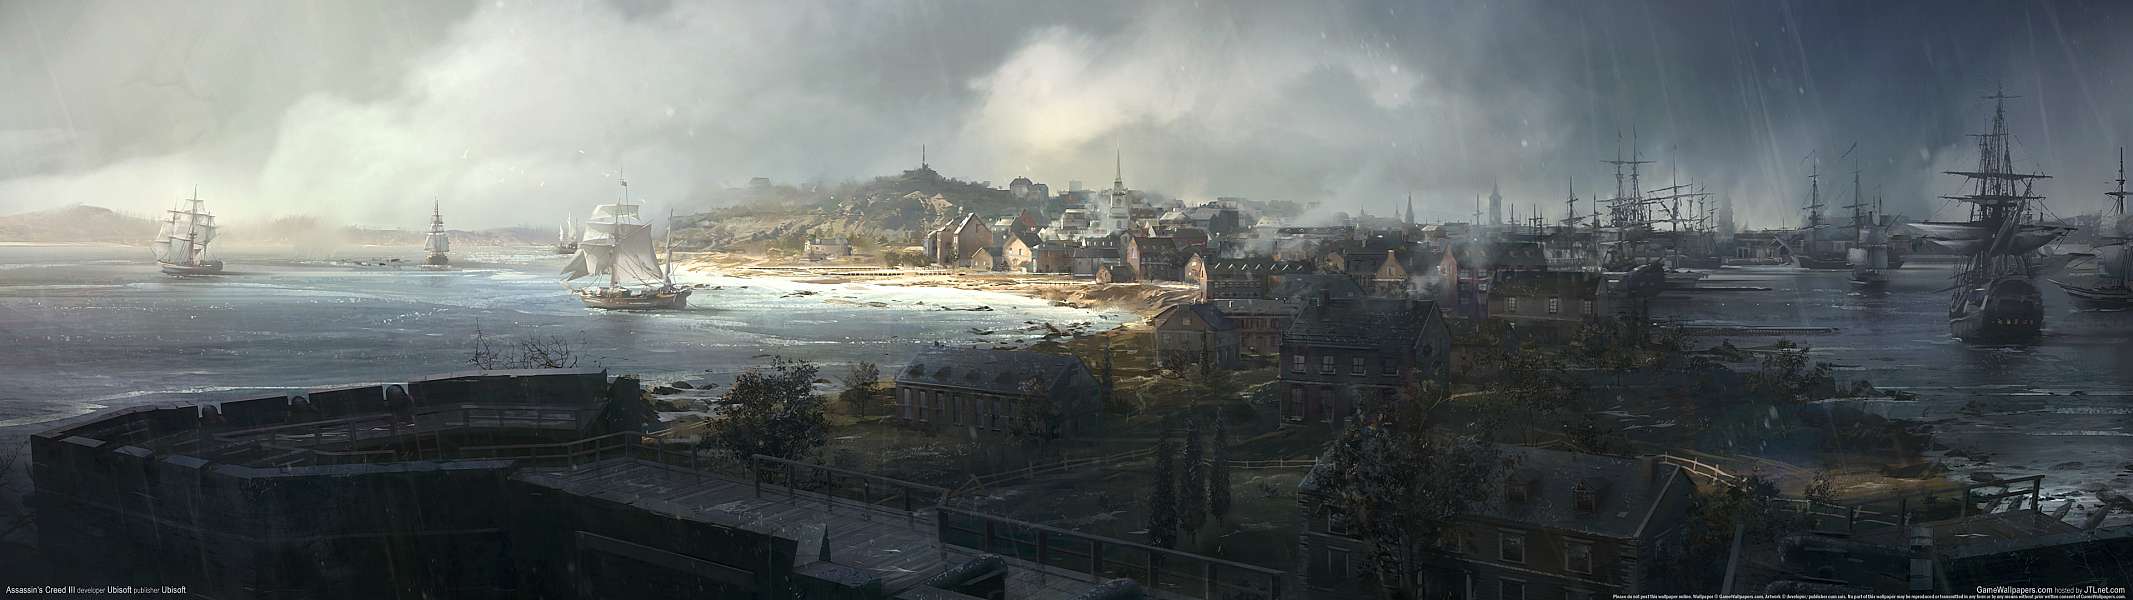 Assassin's Creed III dual screen fond d'cran